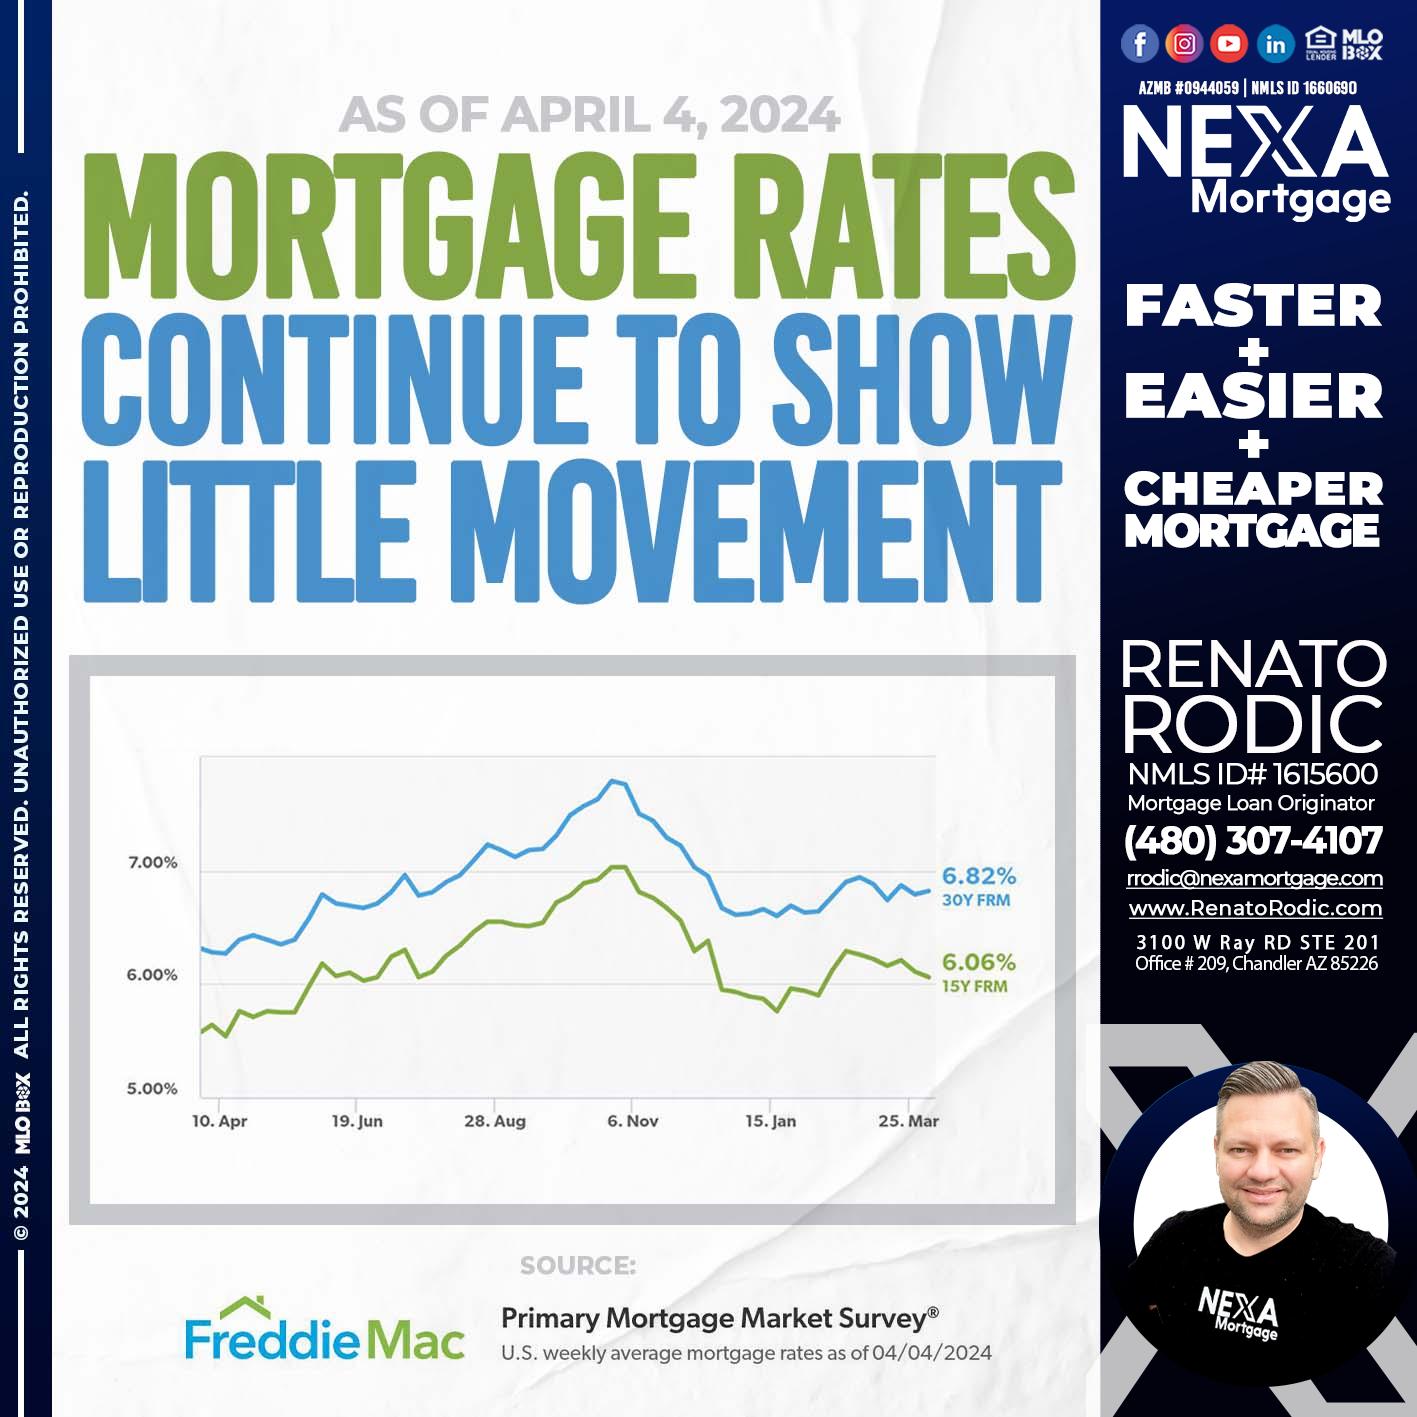 mortgage rates - Renato Rodic -Mortgage Loan Originator